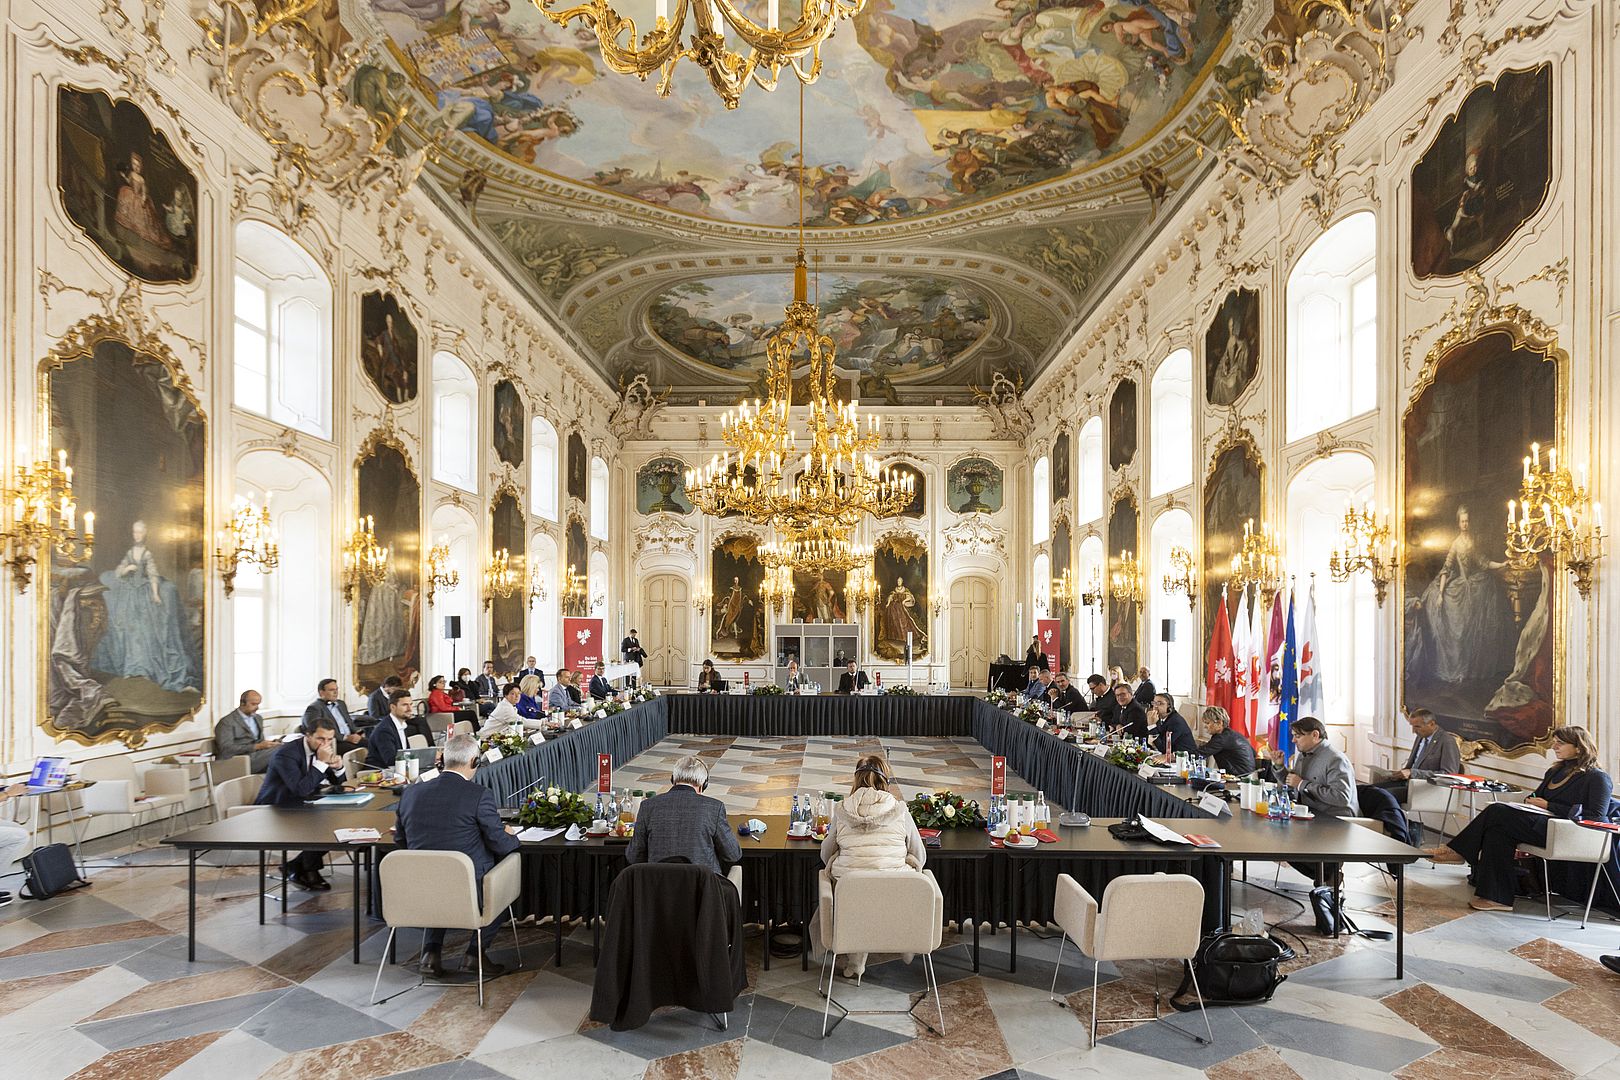 Vollversammlung im Riesensaal in der Innsbrucker Hofburg.